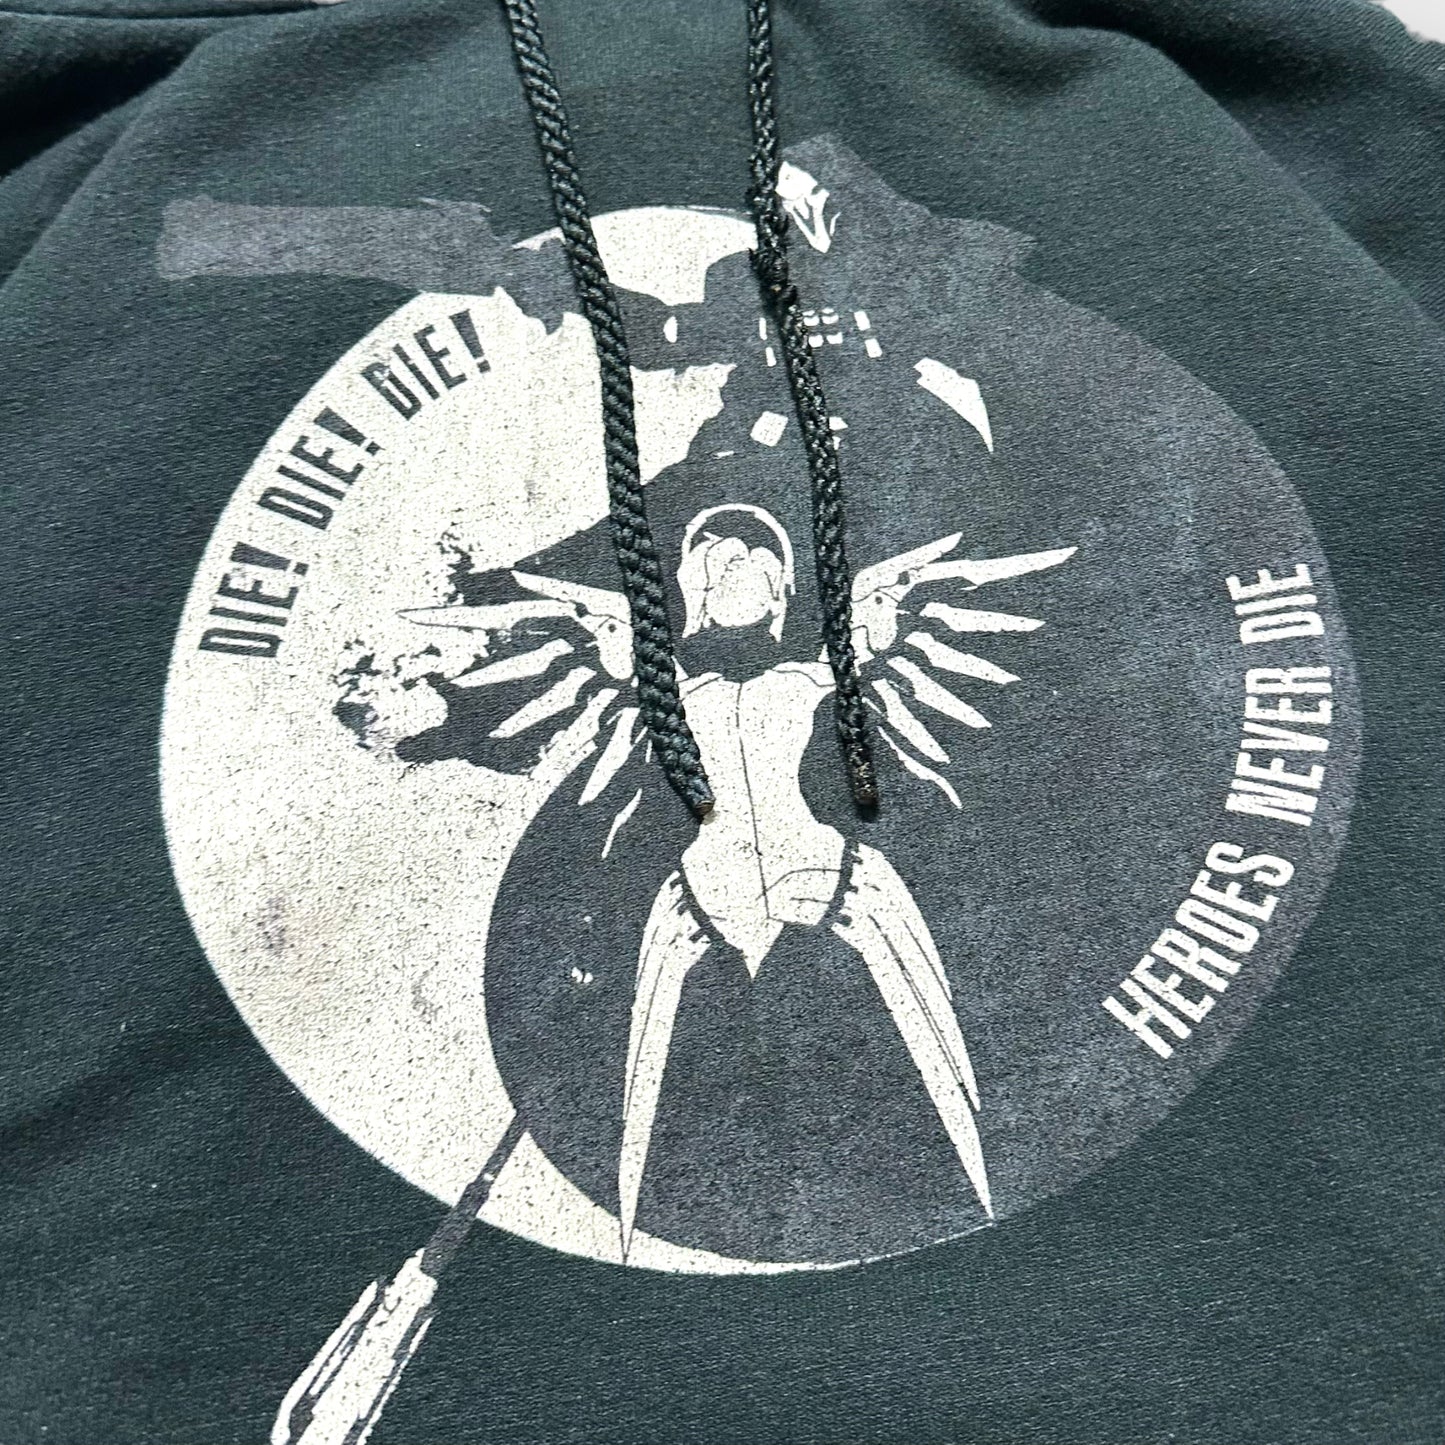 "Overwatch" Design hoodie